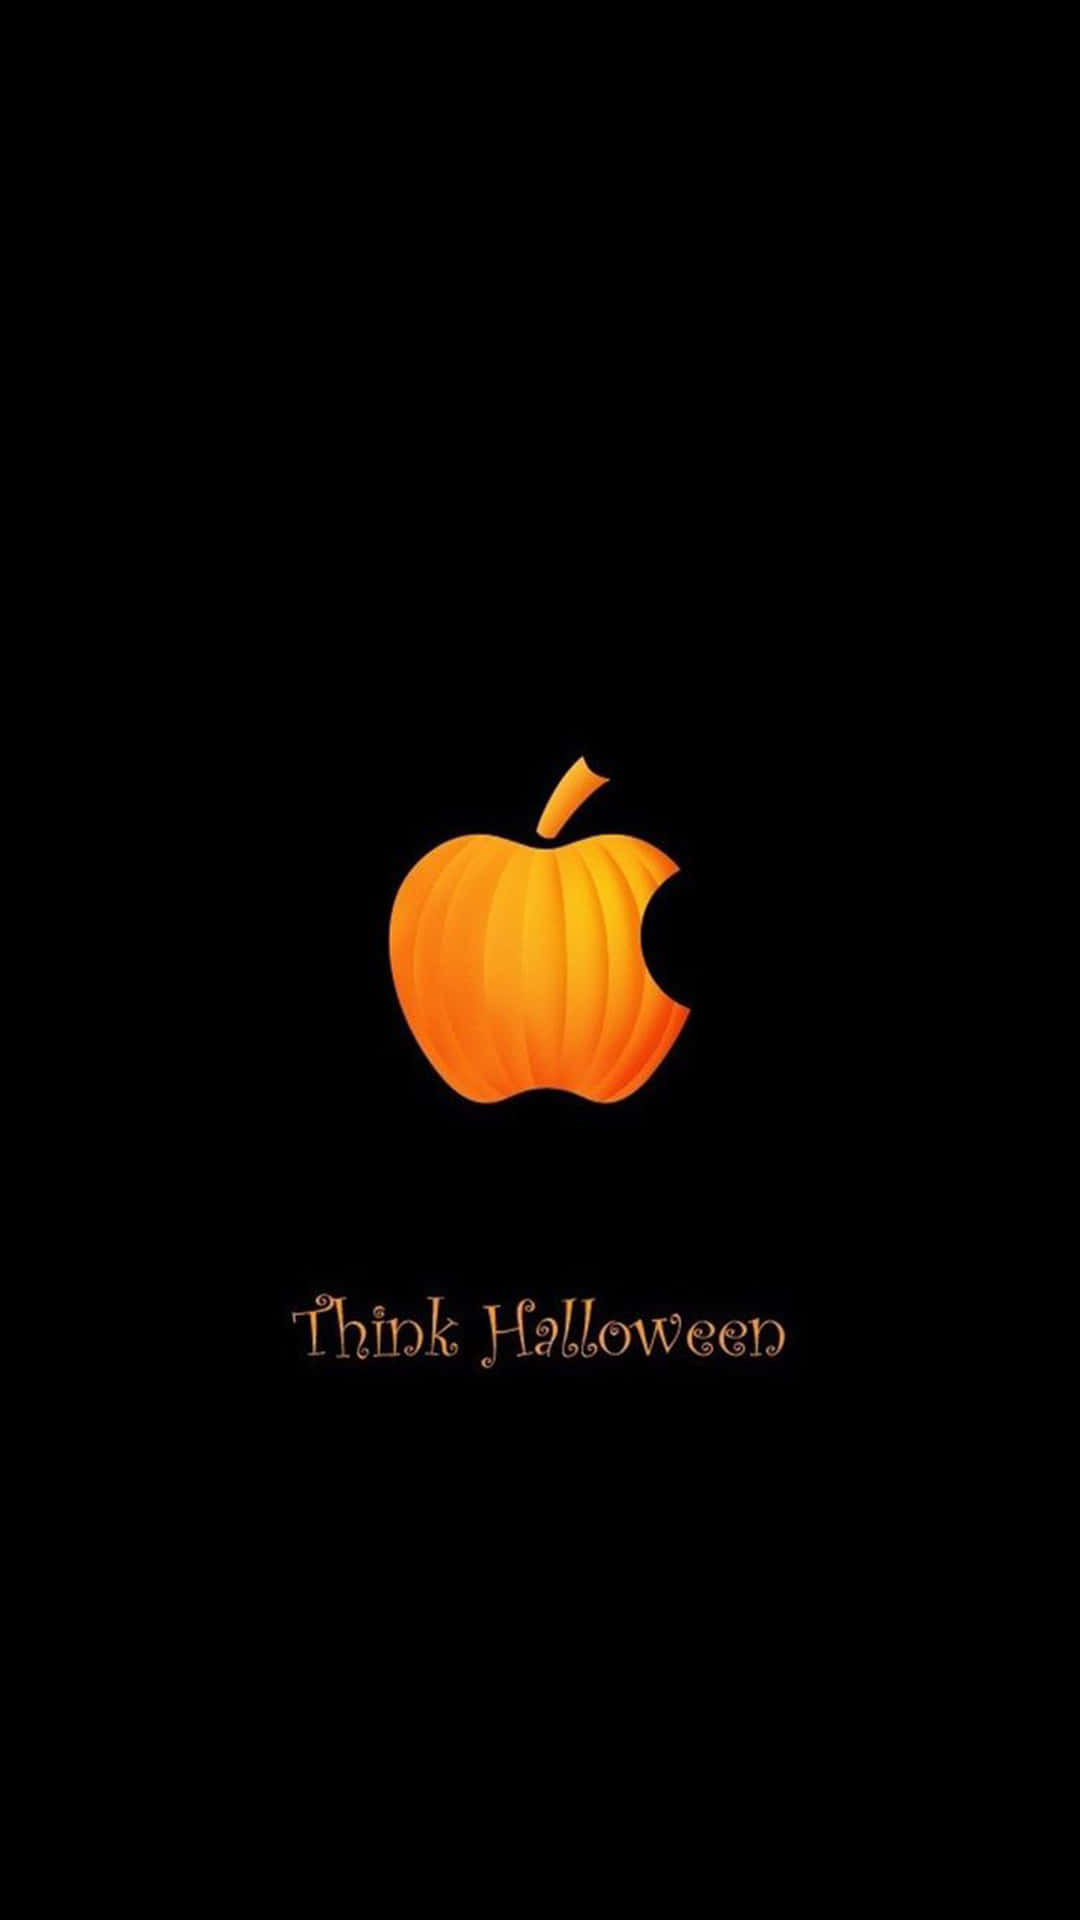 Fondode Pantalla De Halloween Para Iphone Con El Logo De La Manzana Calabaza.